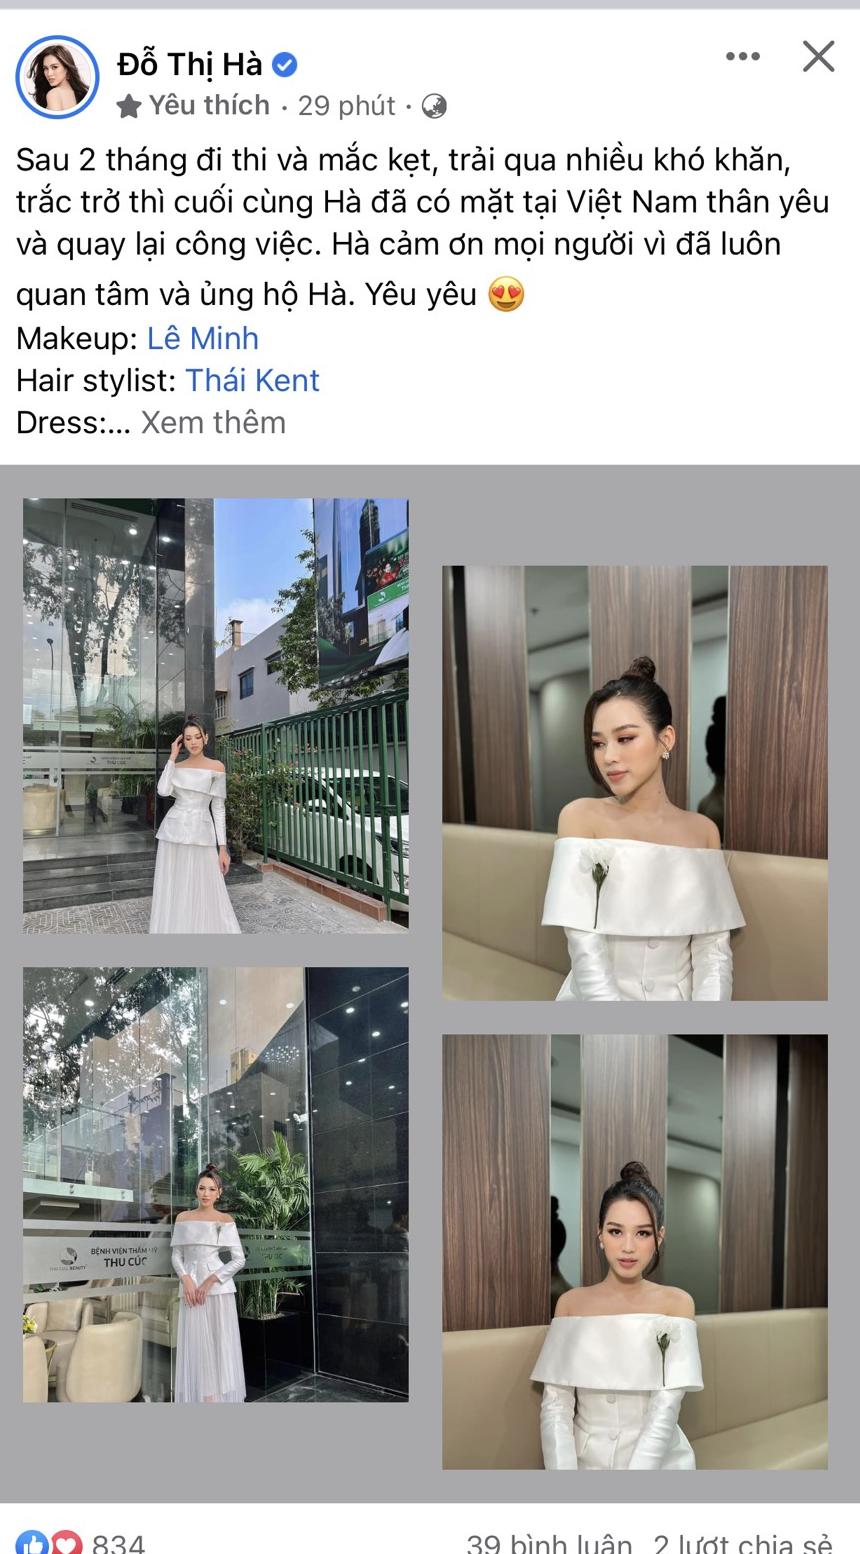 Bài viết mới nhất của Hoa hậu Đỗ Thị Hà nhận được sự quan tâm, chú ý của cư dân mạng